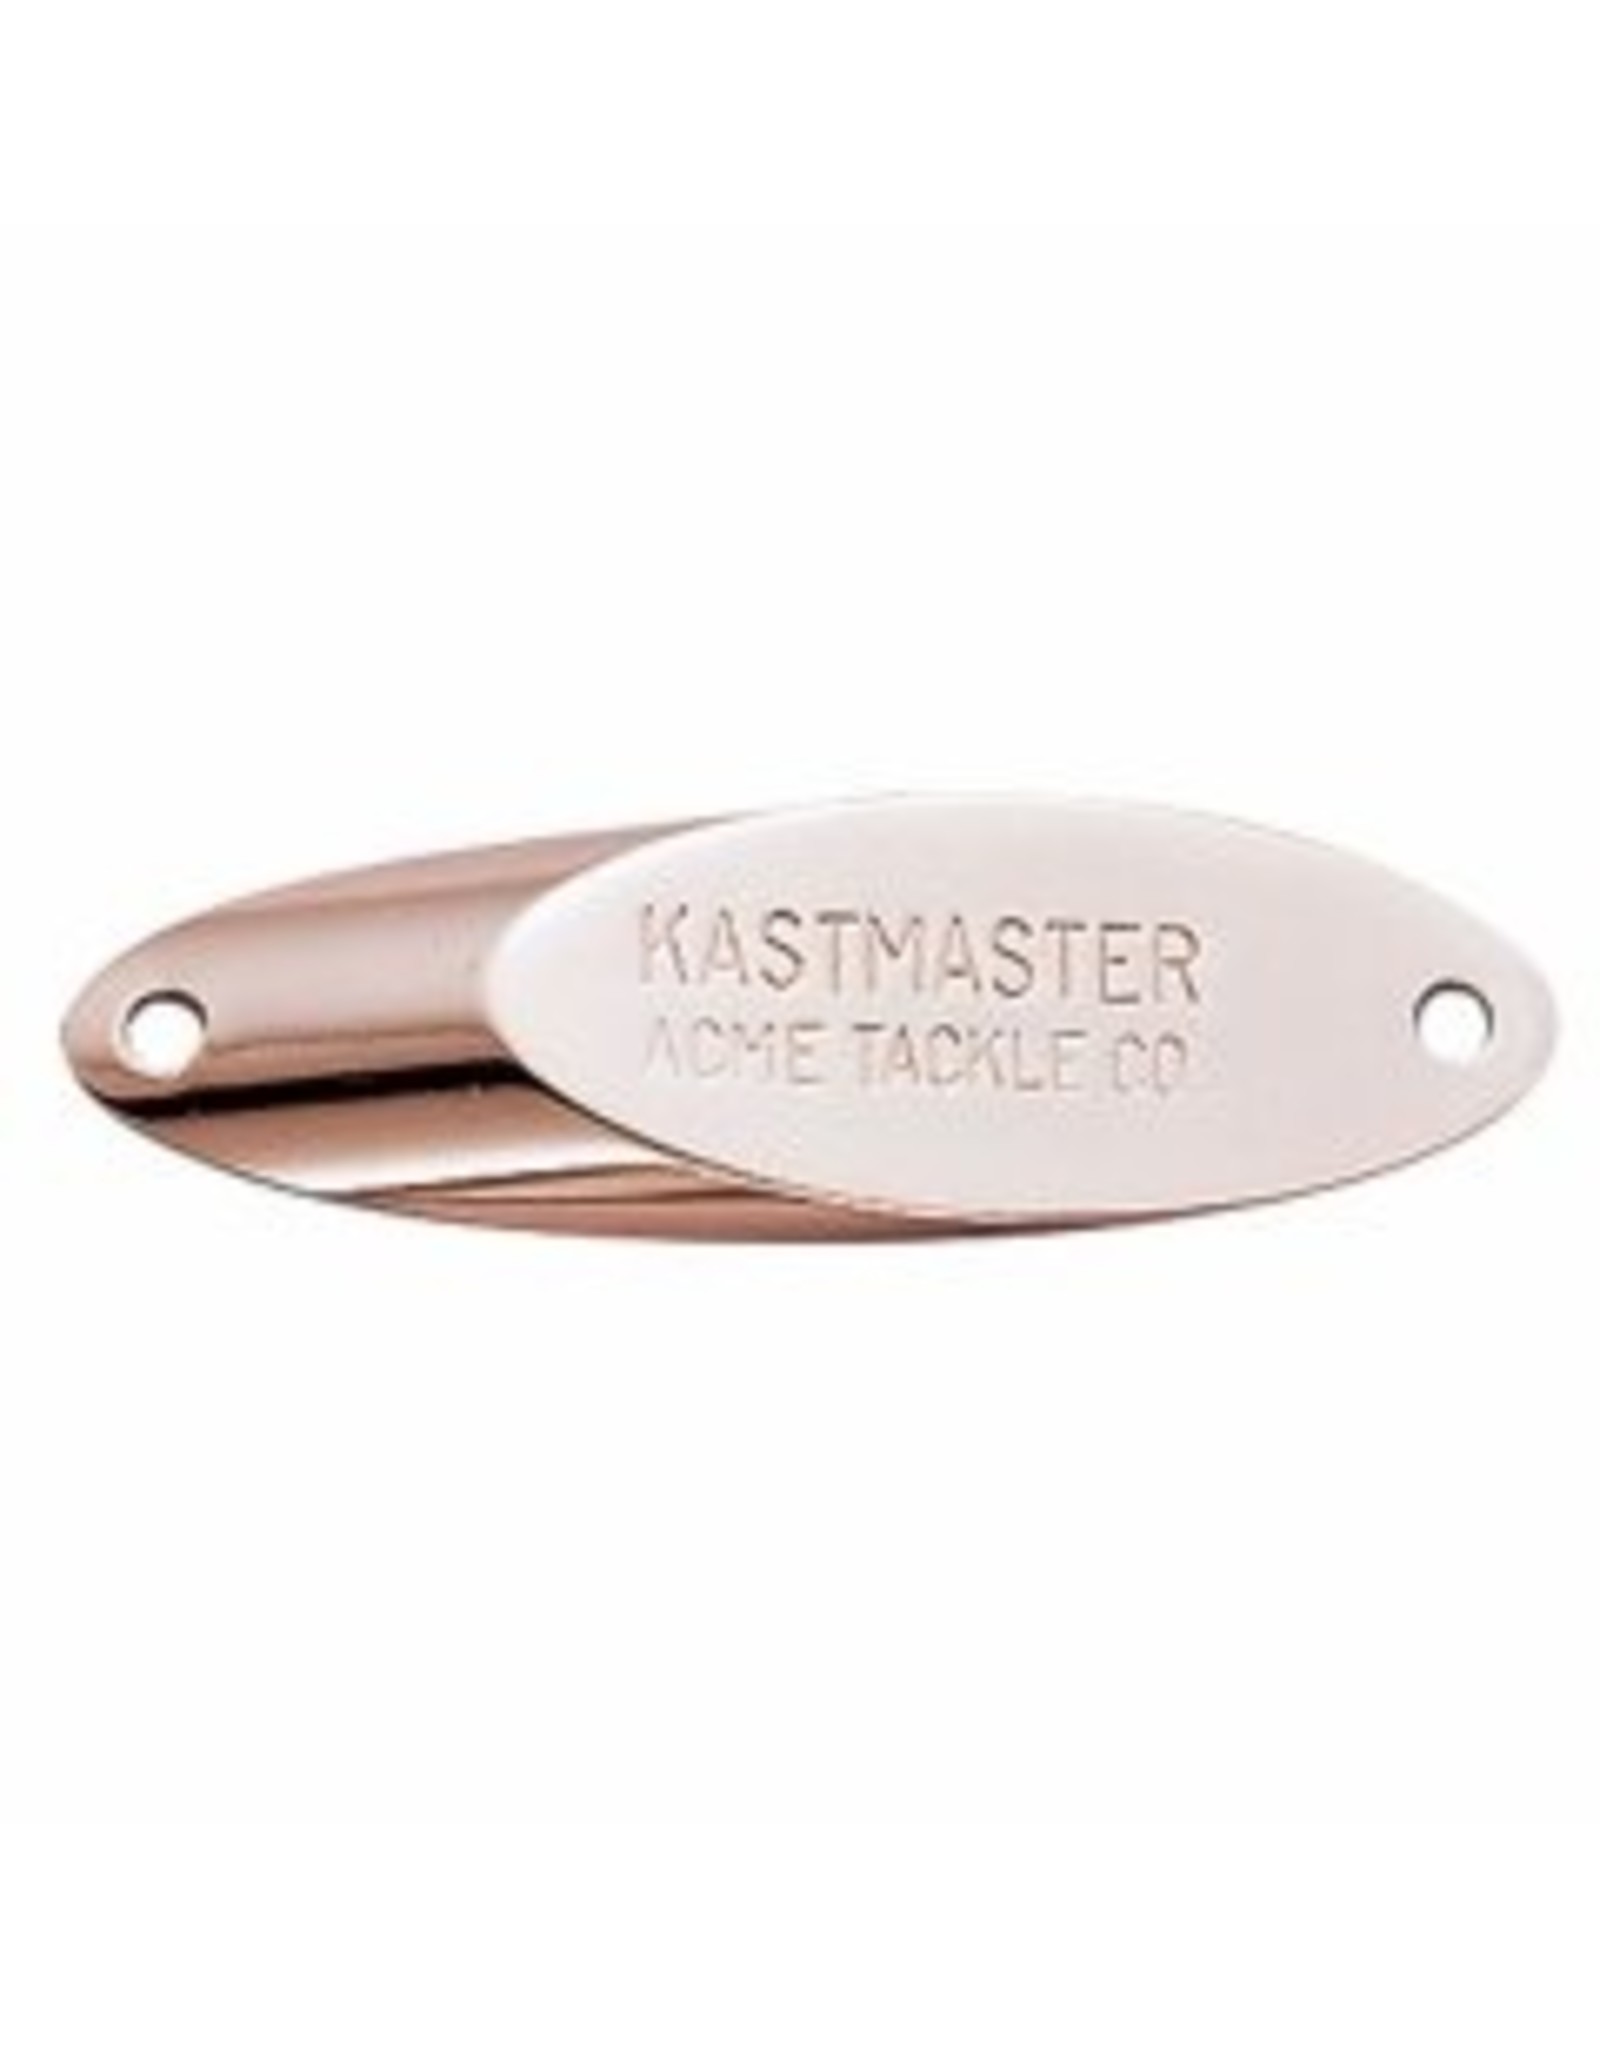 Acme Acme Kastermaster - 1/24 oz.